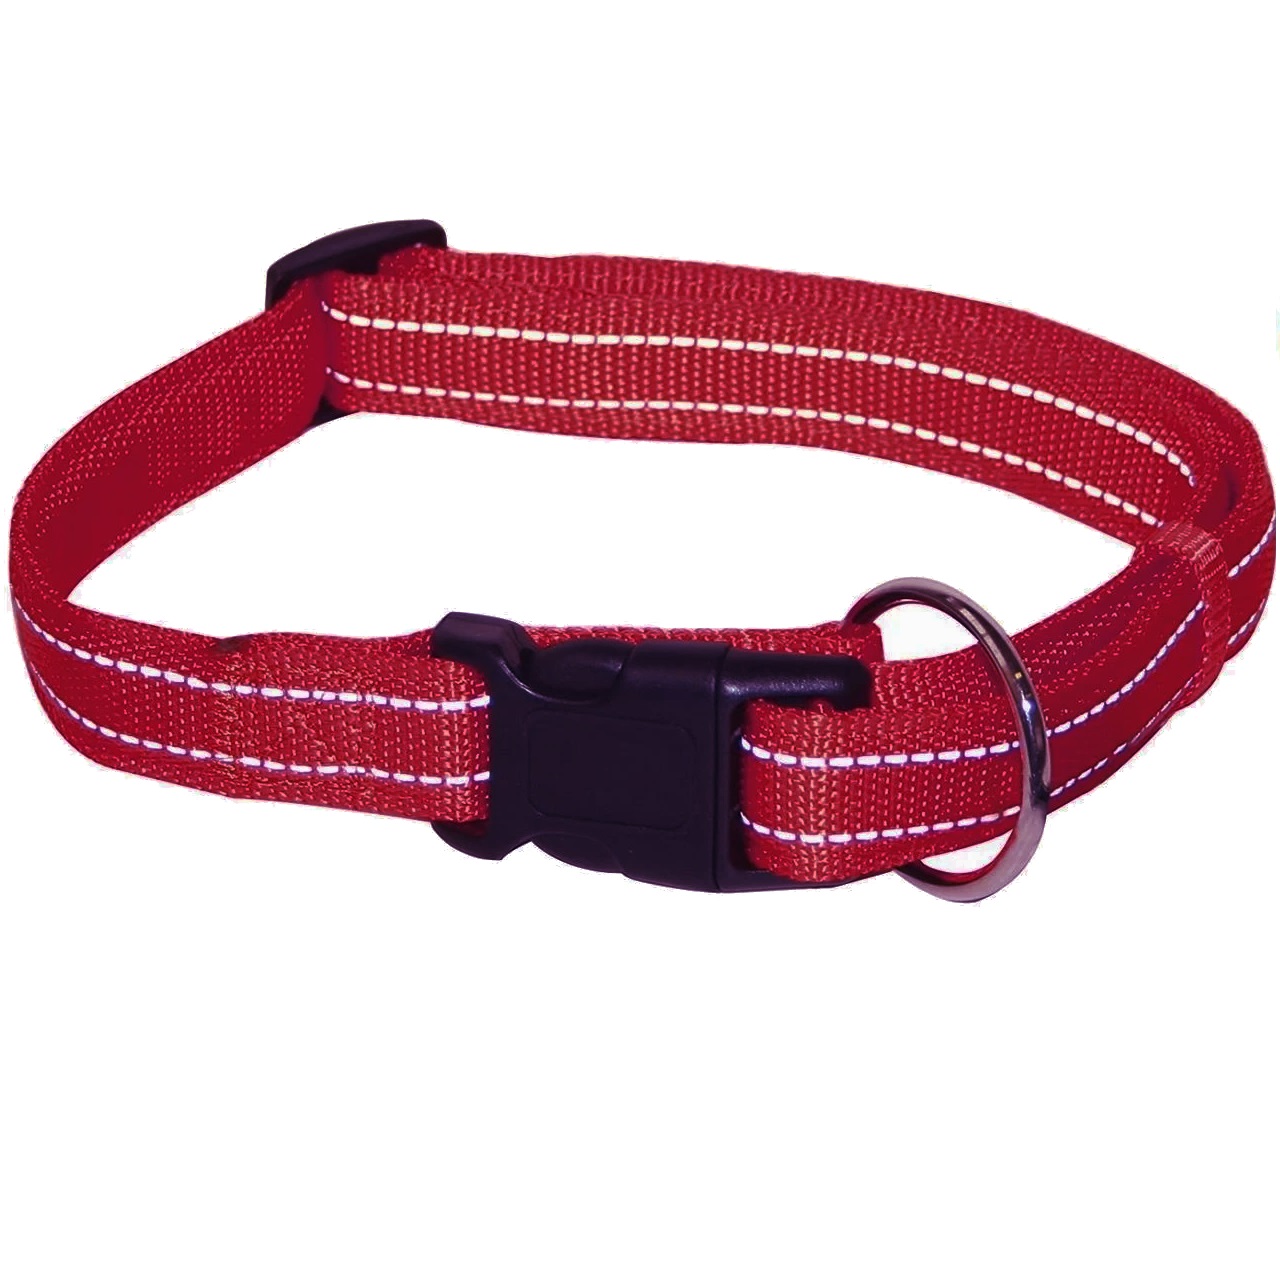 Ошейник для собак Croci Soft Reflective светоотражающий, 40-65х2,5 см, бордовый (C5179740) - фото 1